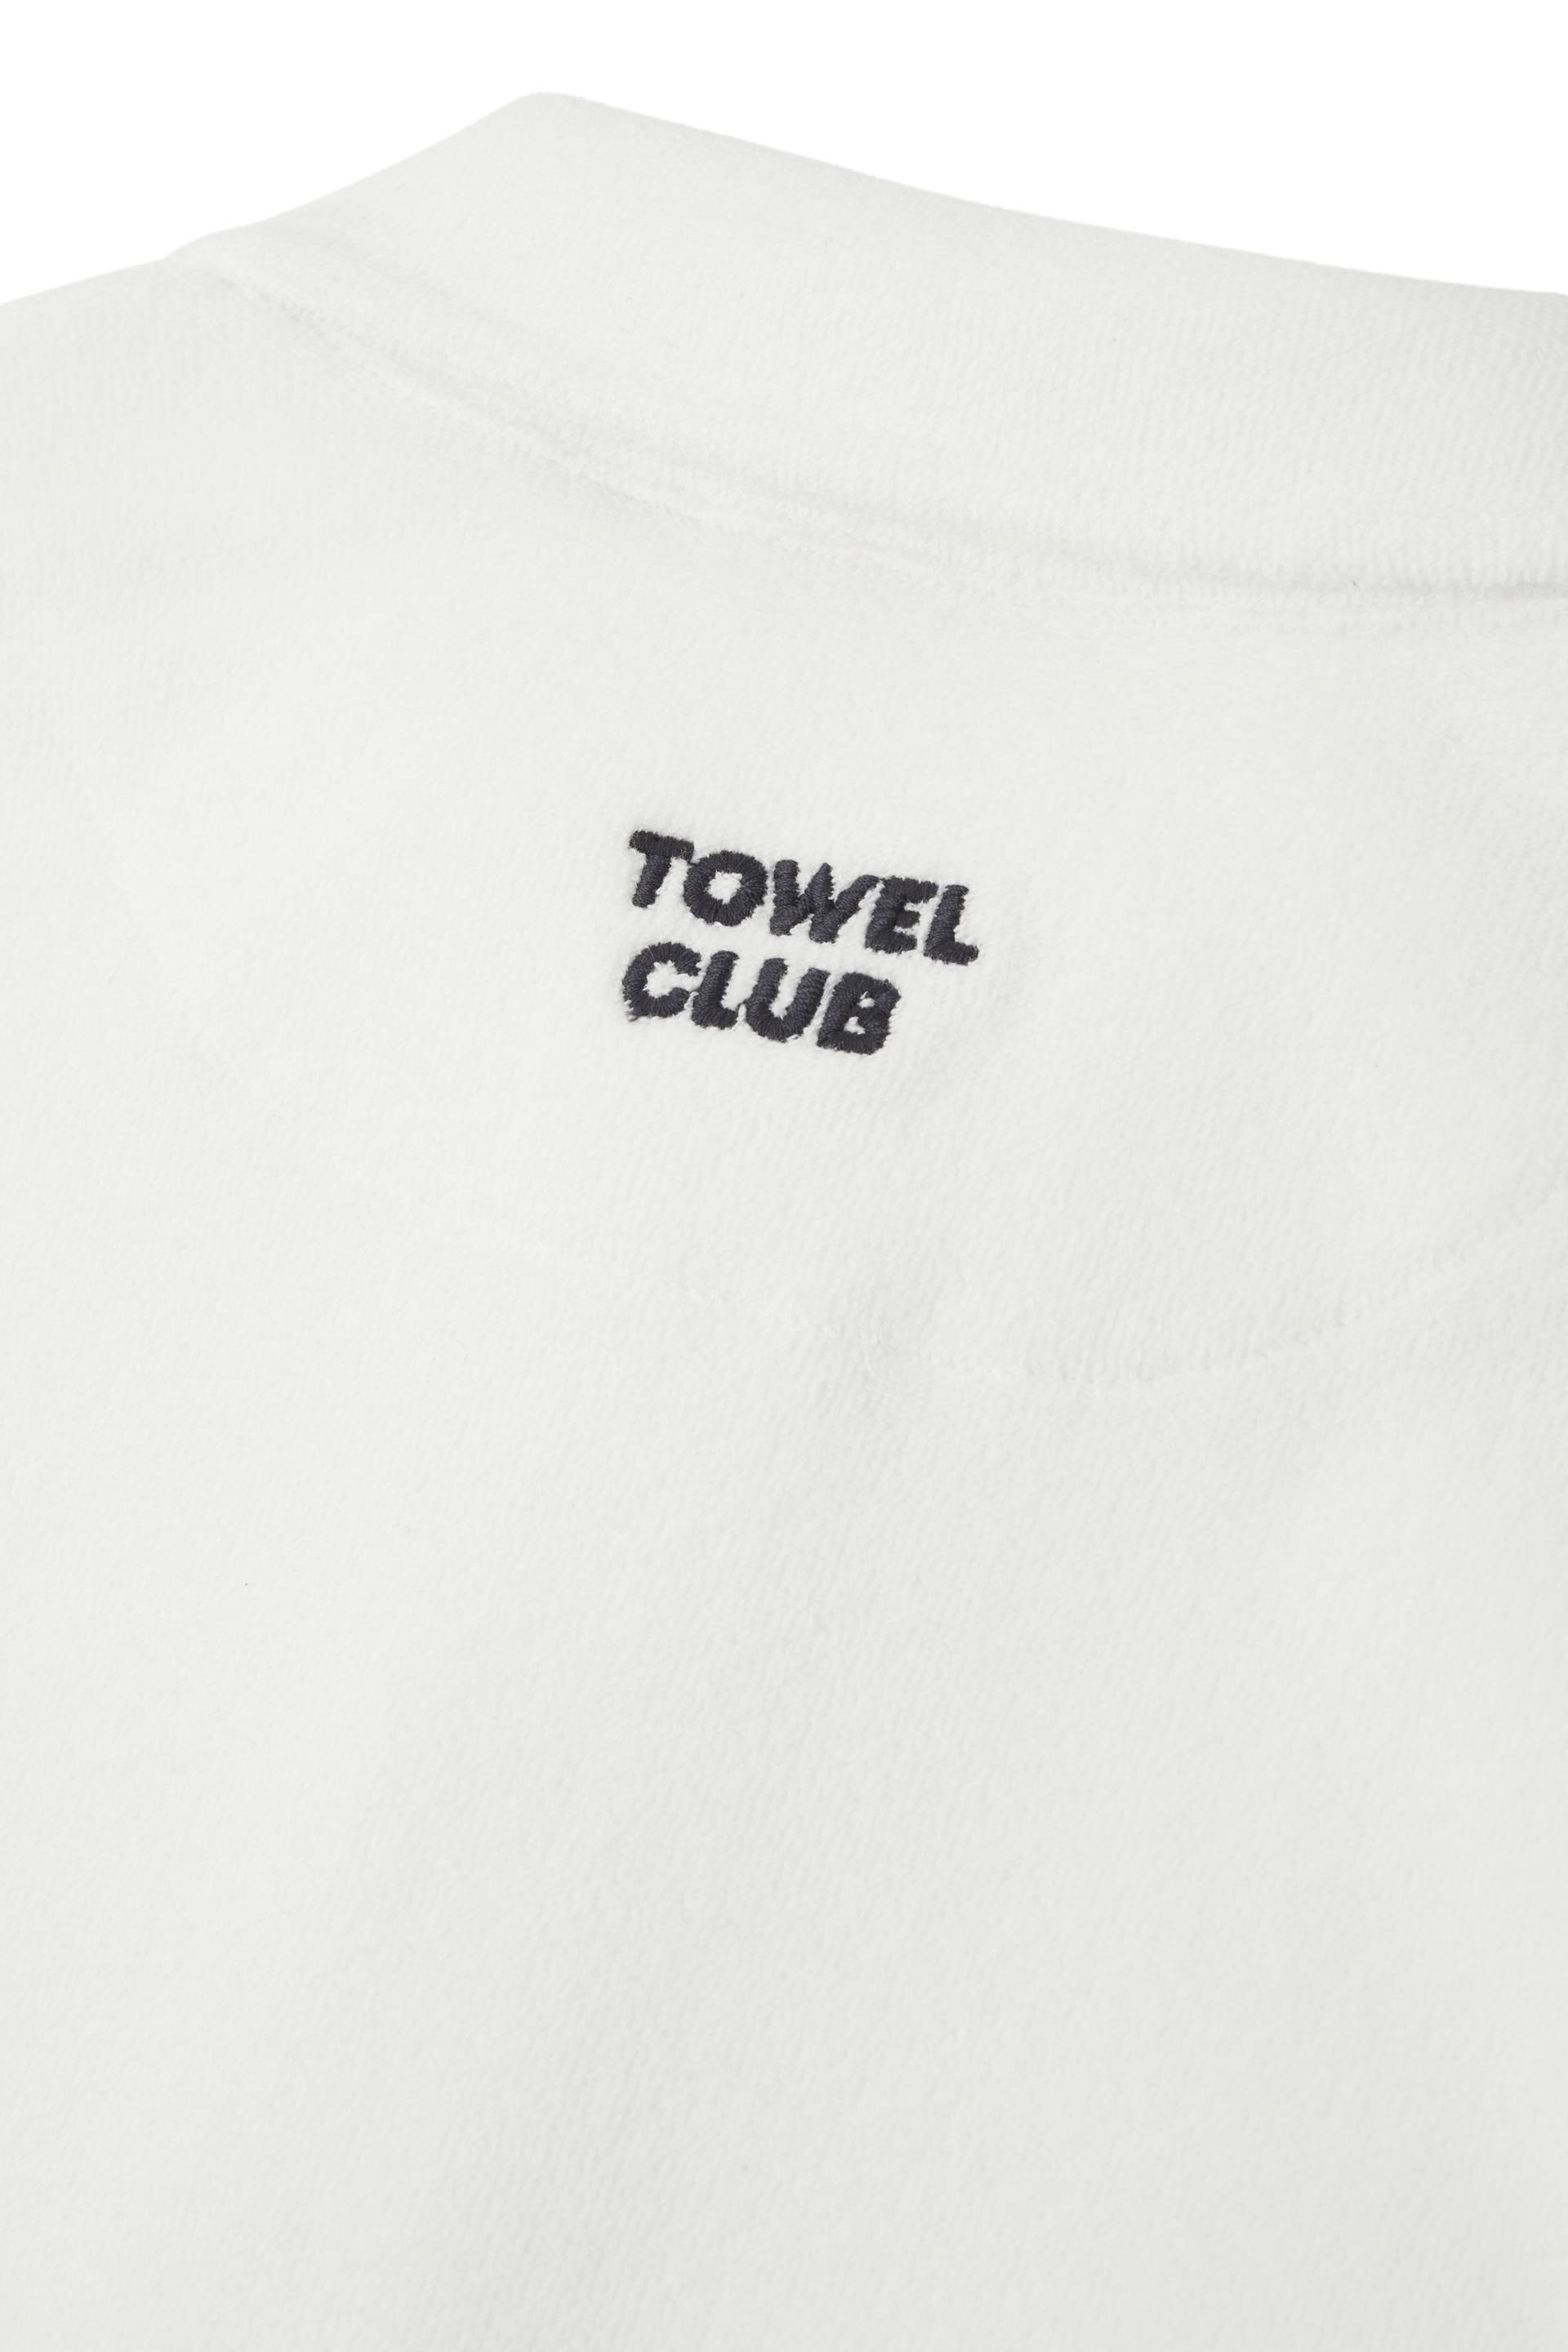 Towel Club Towel Club Piquet Tshirt Off-White - 3